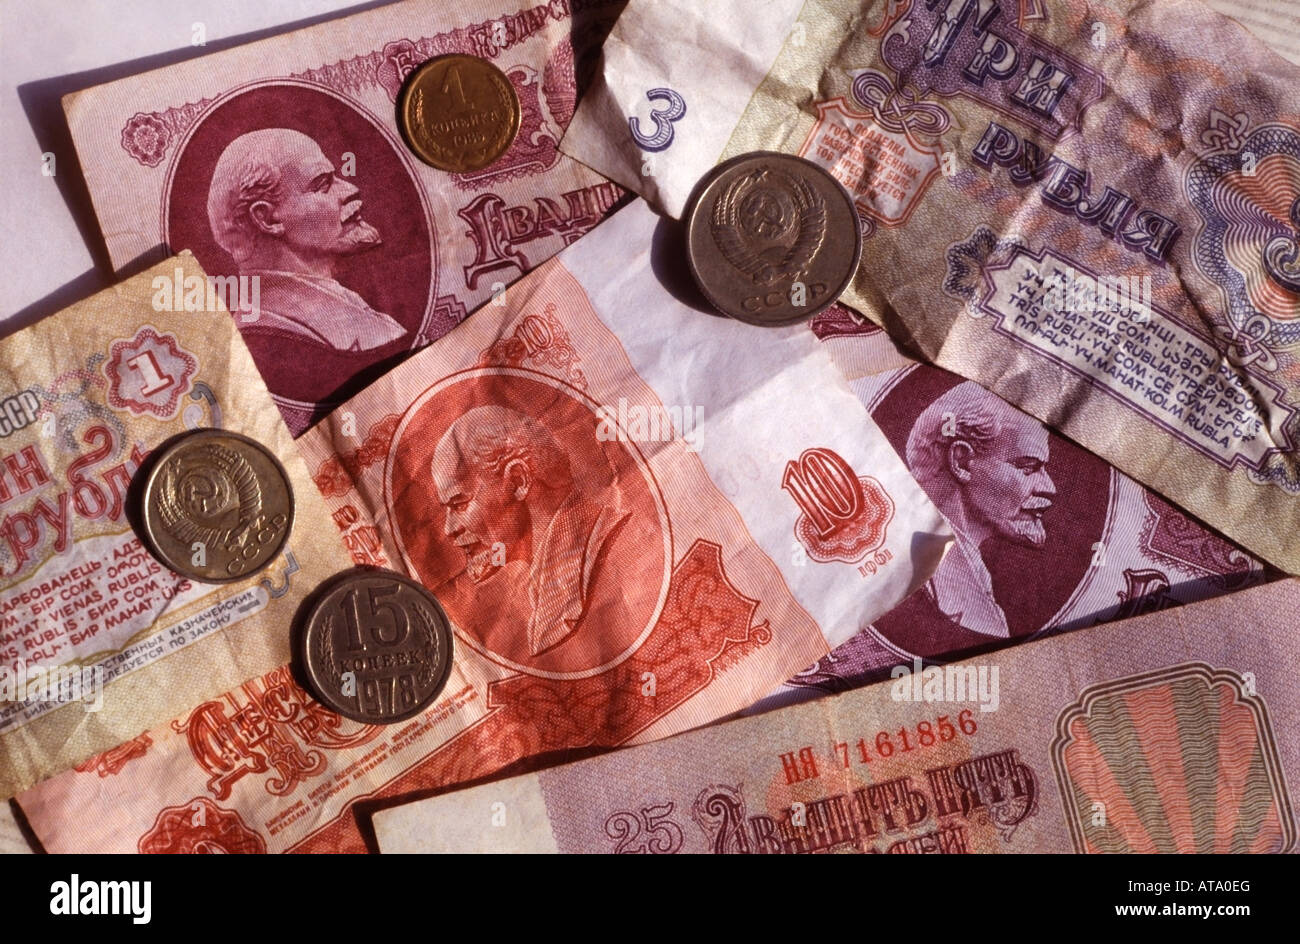 Rubel und Kopeken die Währung von der ehemaligen Sowjetunion, Moskau, Russland. Stockfoto